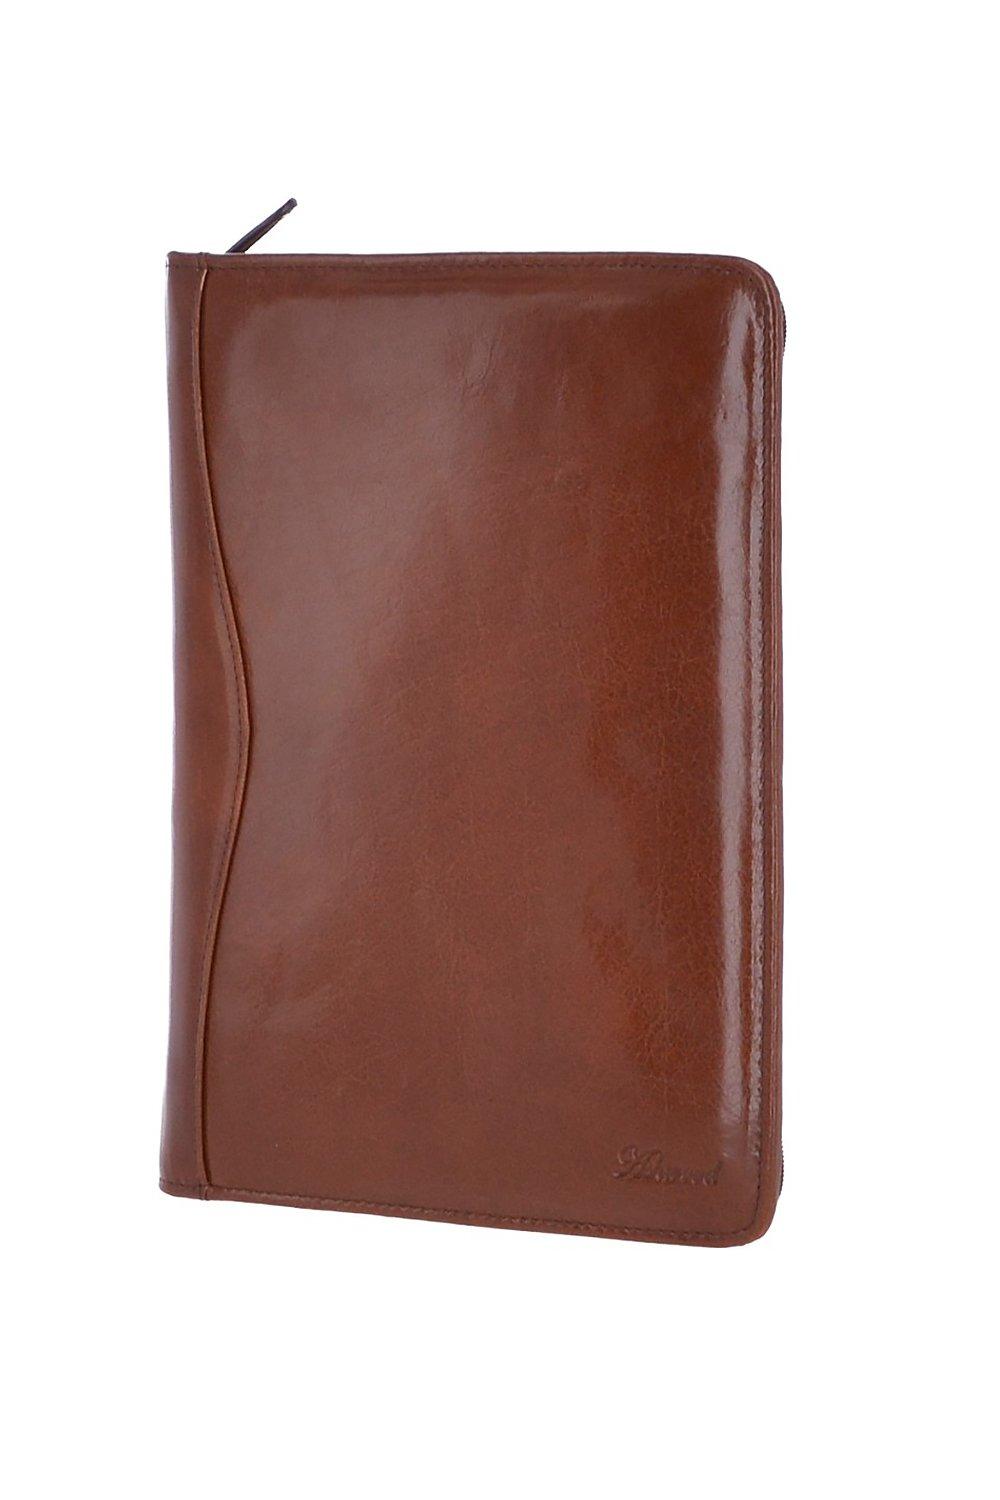 Держатель для документов из натуральной кожи формата А4 Ashwood Leather, коричневый цена и фото